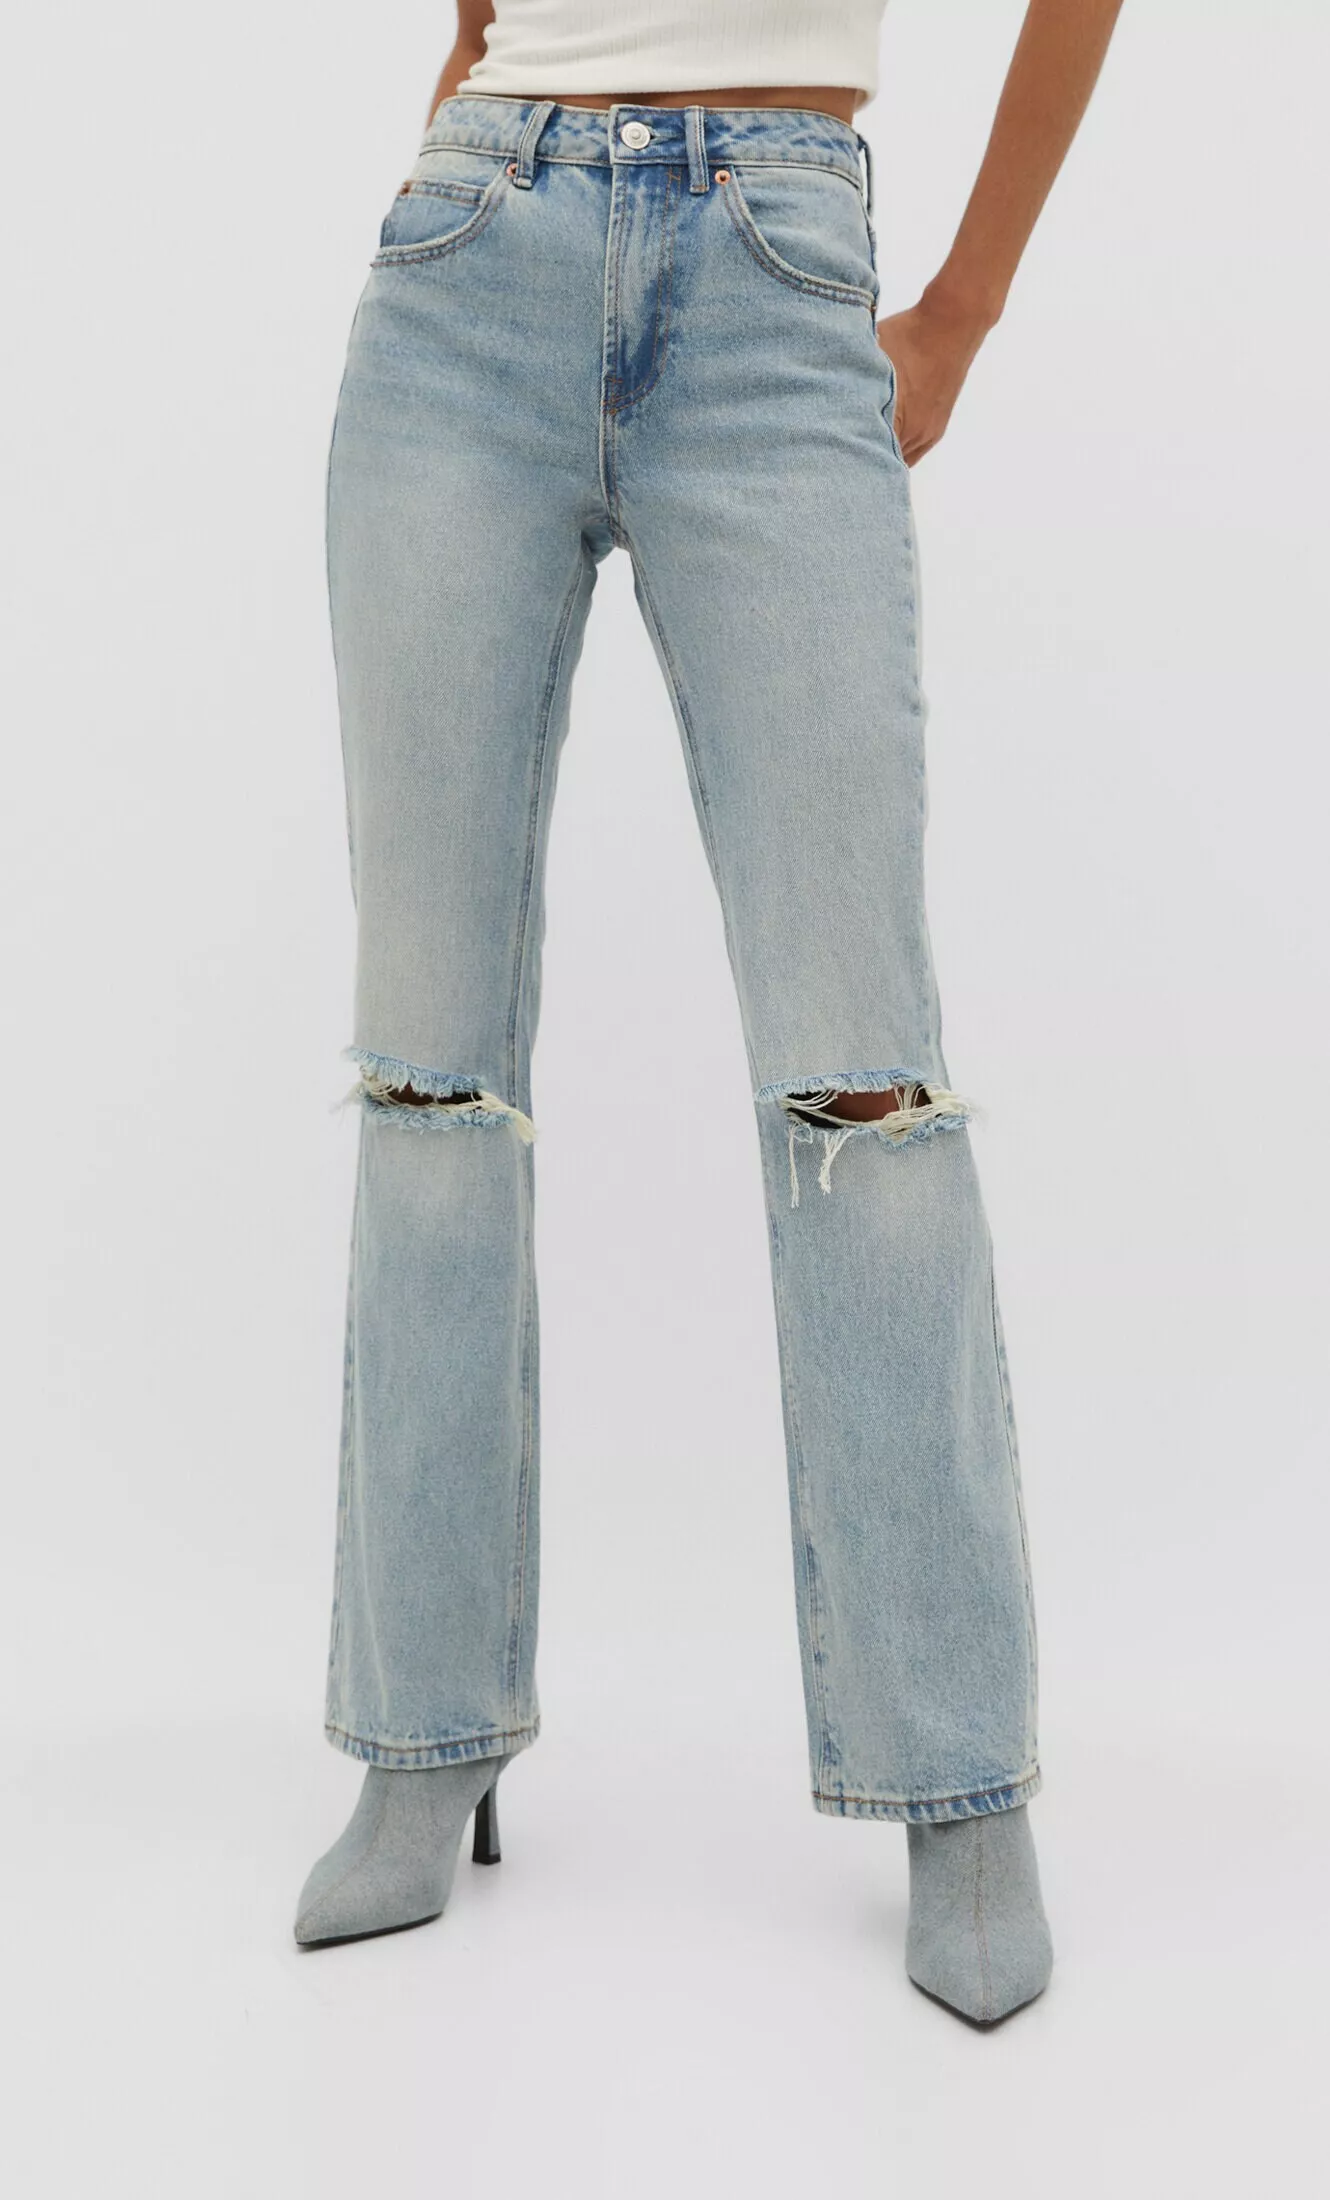 Jeans-Schlaghose - Jeans - BSK Teen